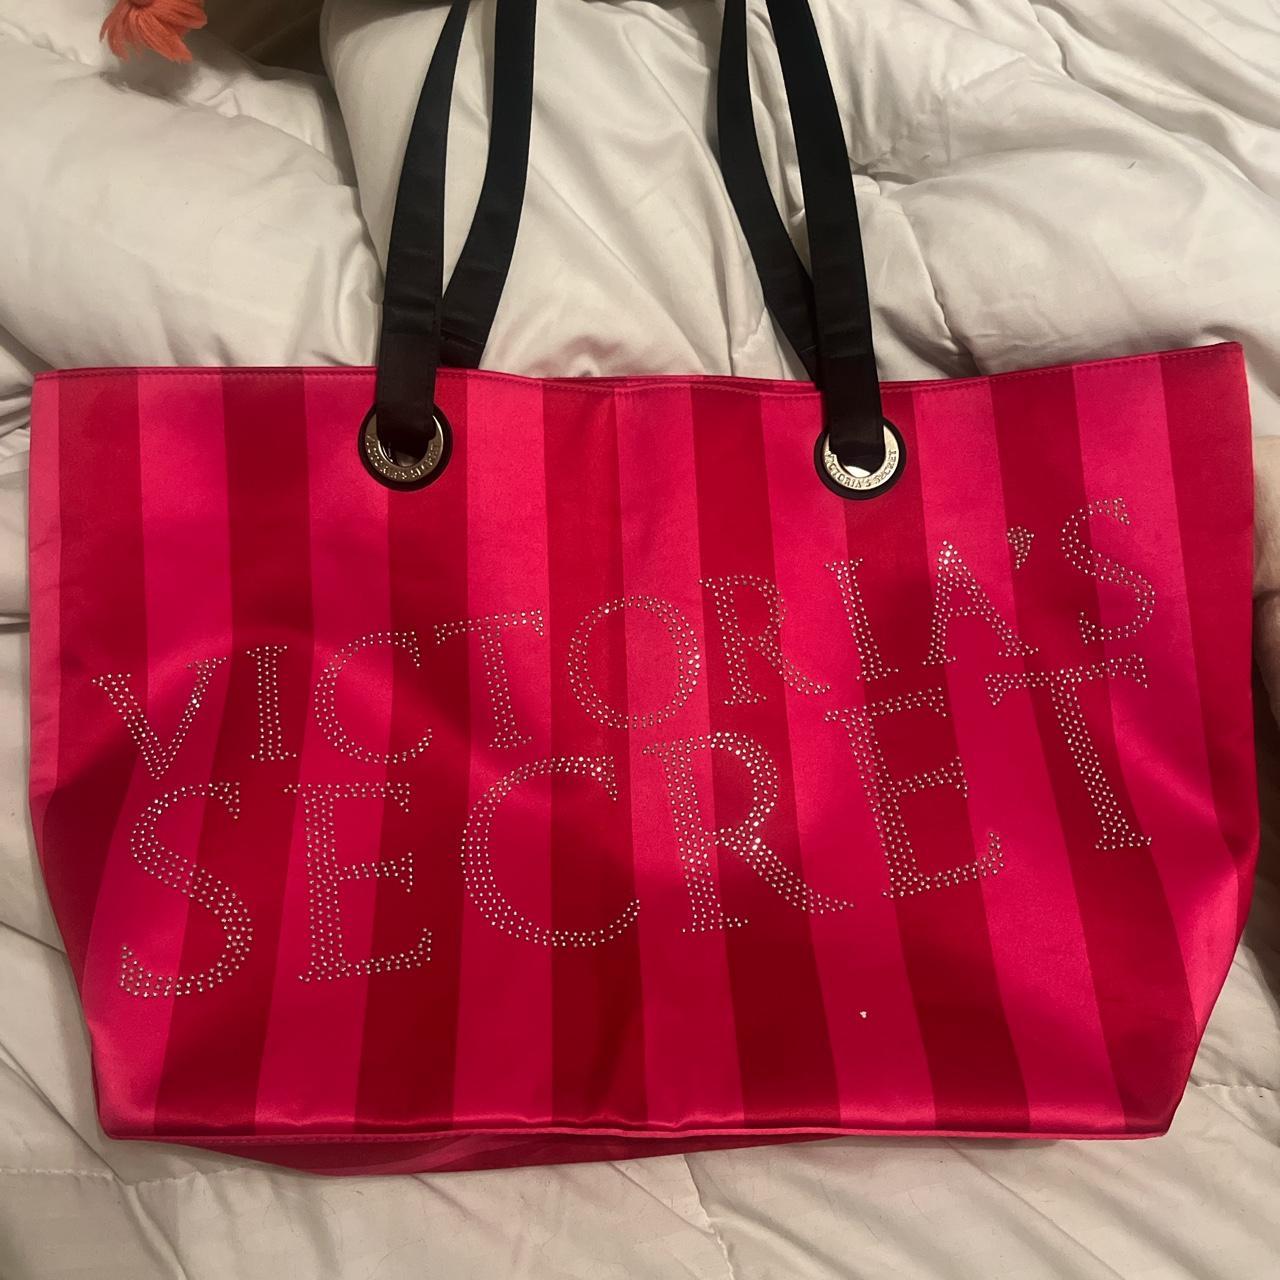 Victoria’s Secret fluffy teddy black tote bag